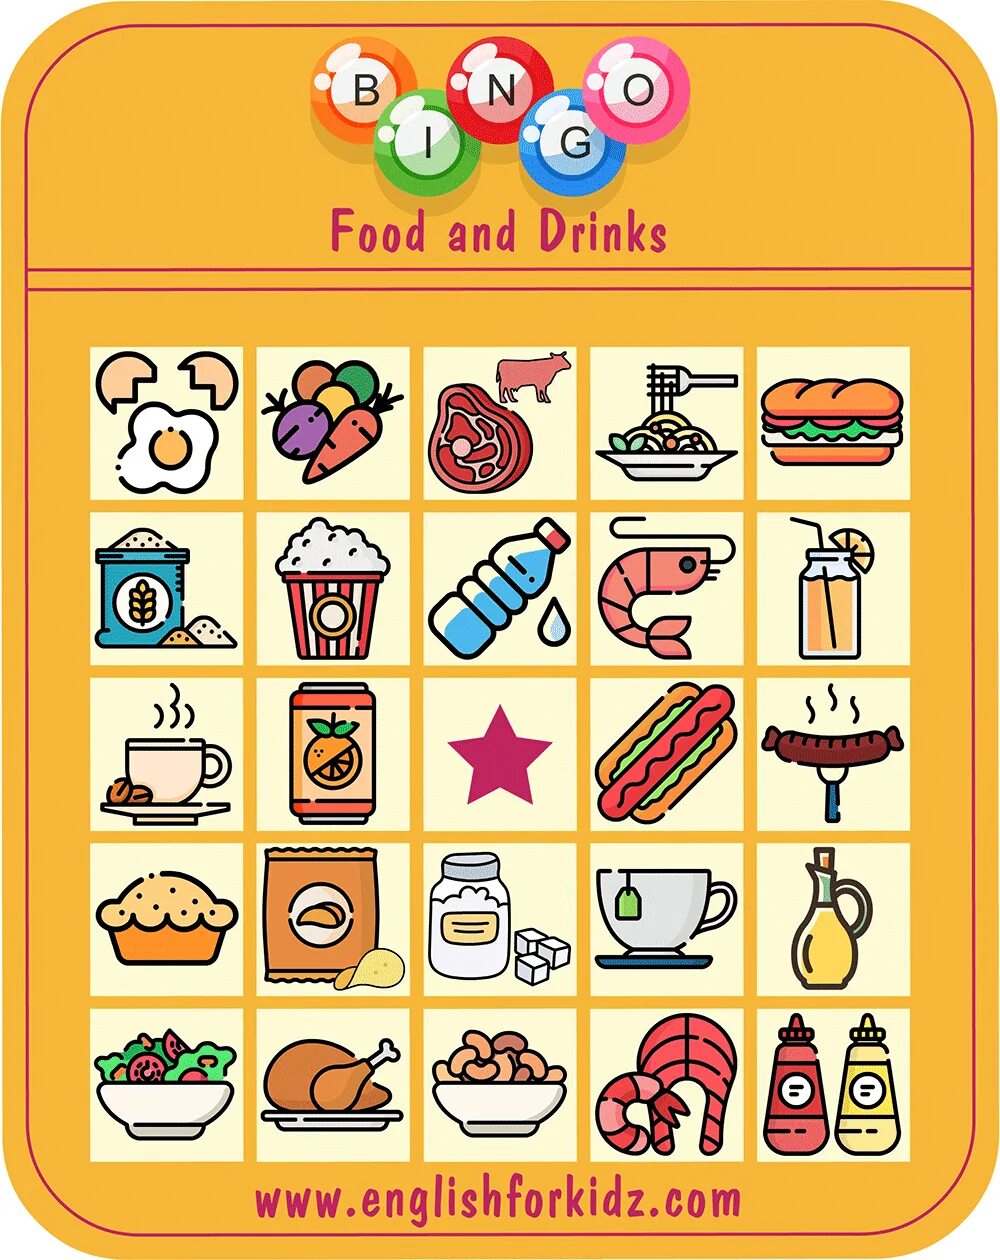 Food Drinks задания для дошкольников. Food and Drinks на английском. Еда и напитки картинки для детей. Food and Drinks творческая работа.